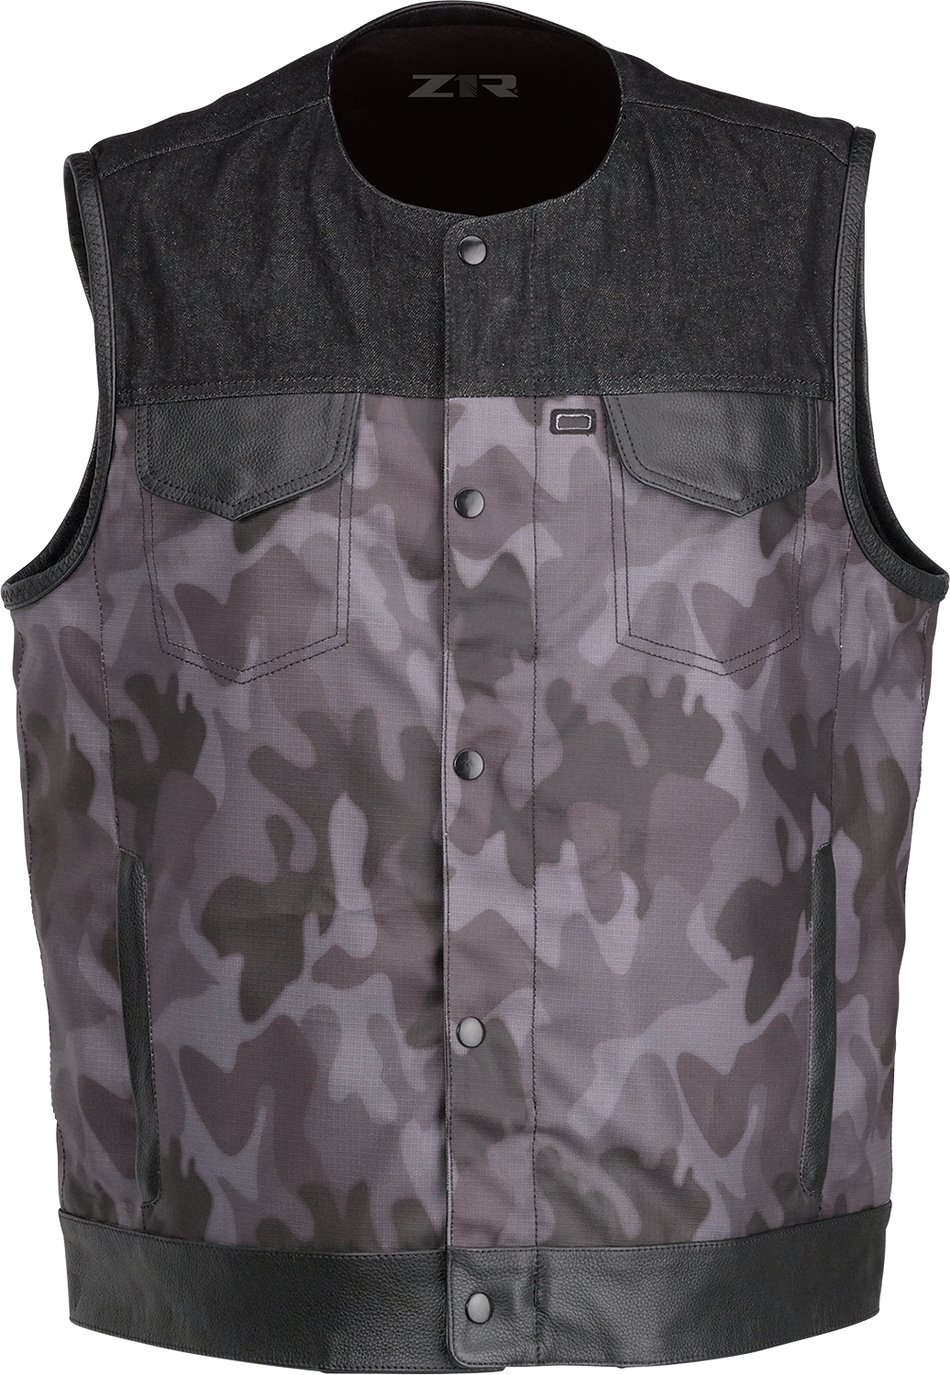 Z1R Nightfire Camo Vest - Black/Gray - Small 2830-0624